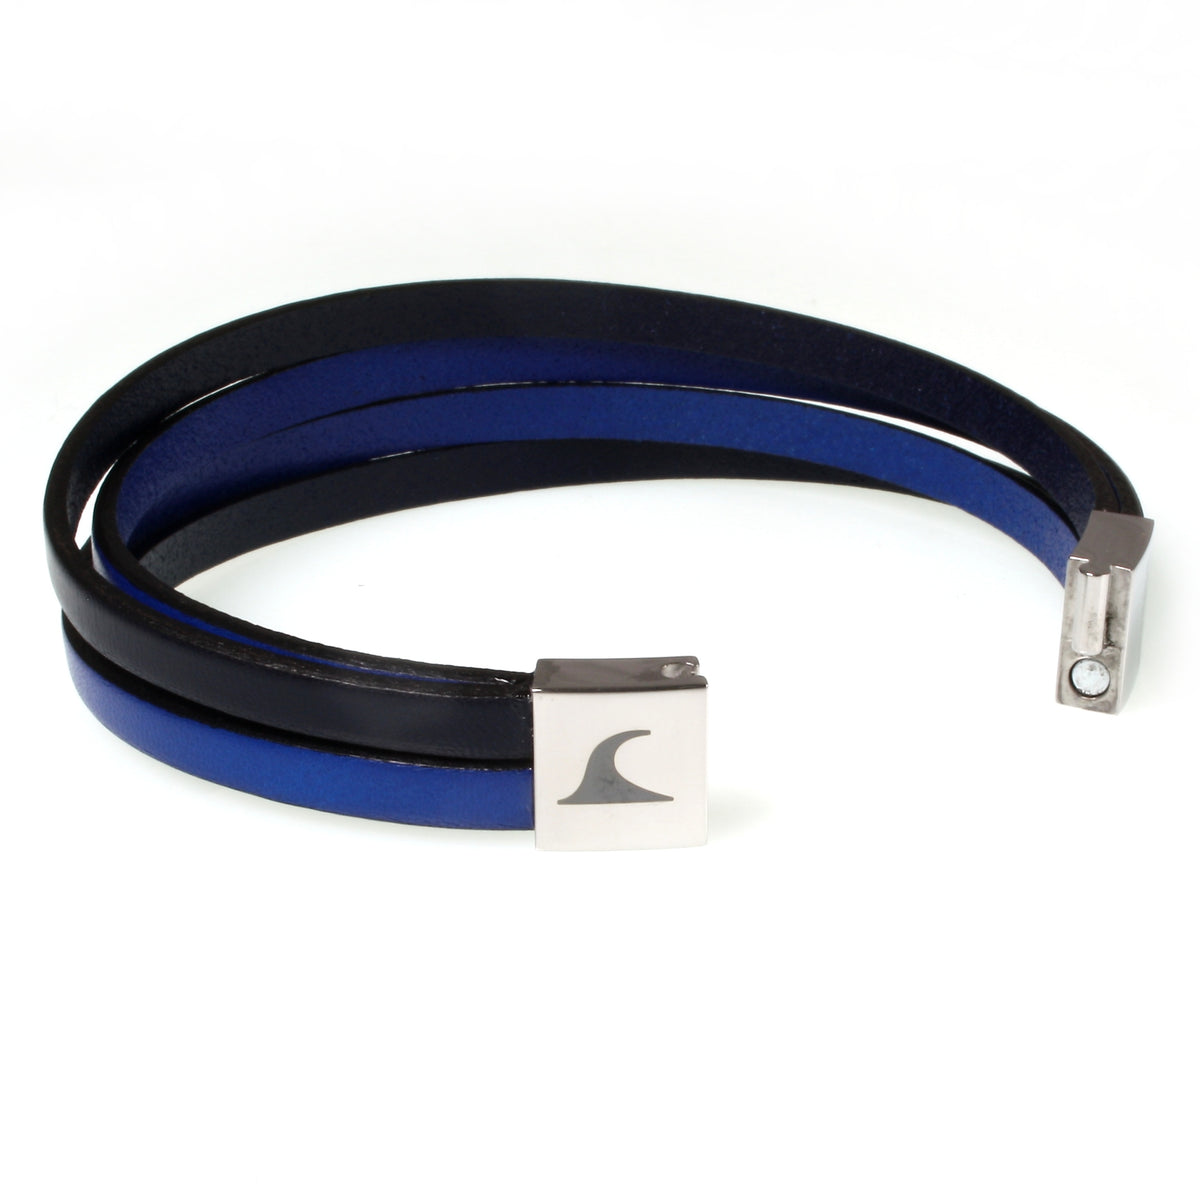 Herren-Leder-Armband-Twist-navy-blau-flach-Edelstahlverschluss-offen-wavepirate-shop